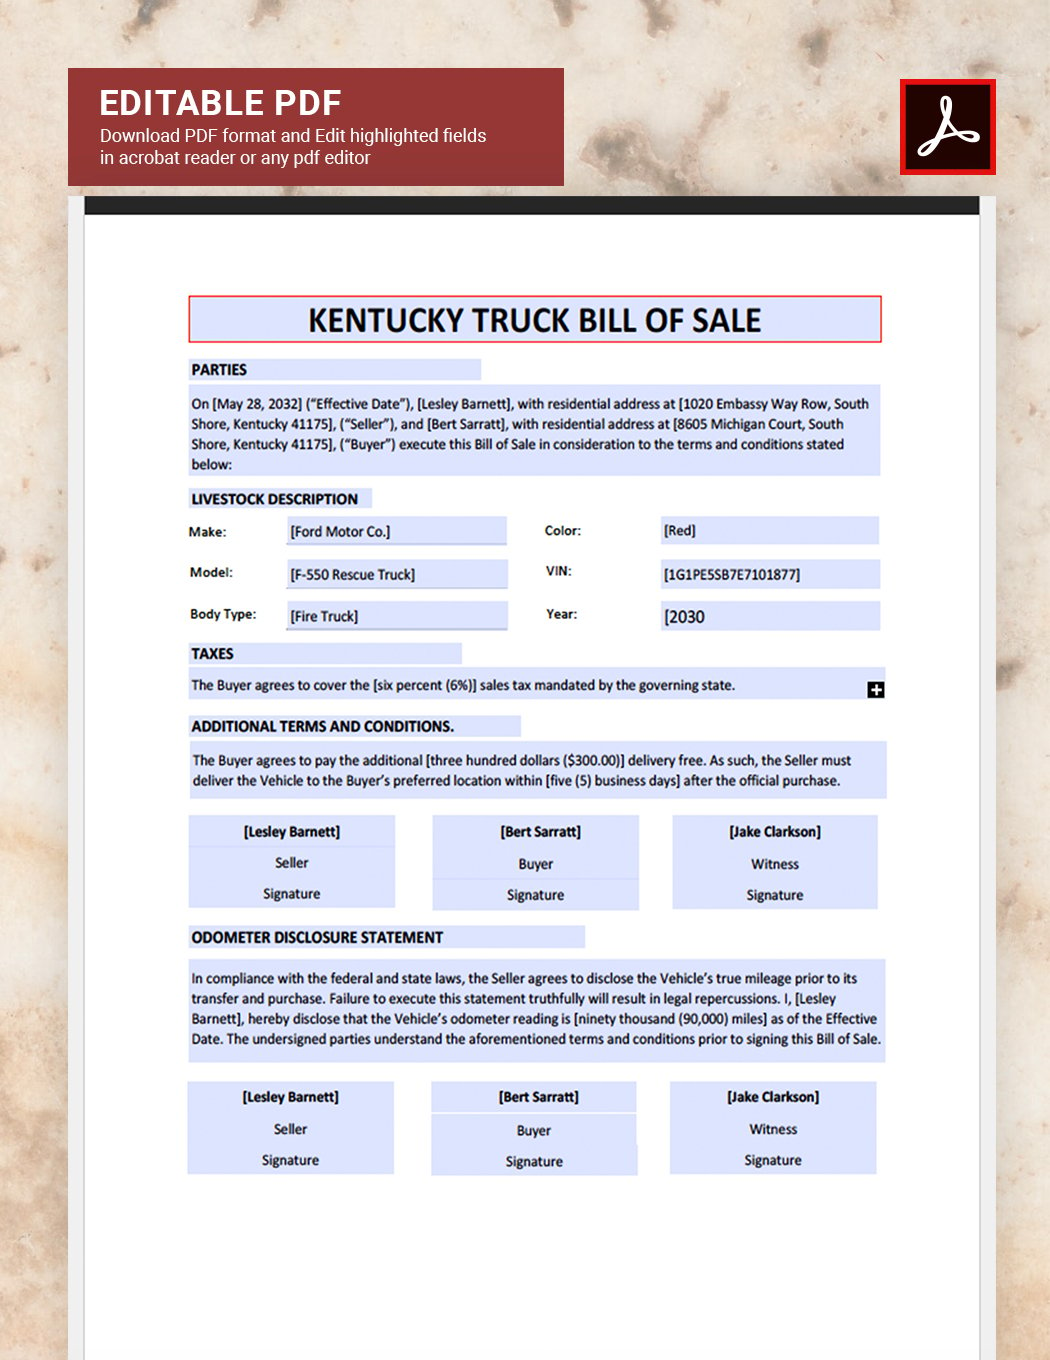 Kentucky Truck Bill of Sale Form Template